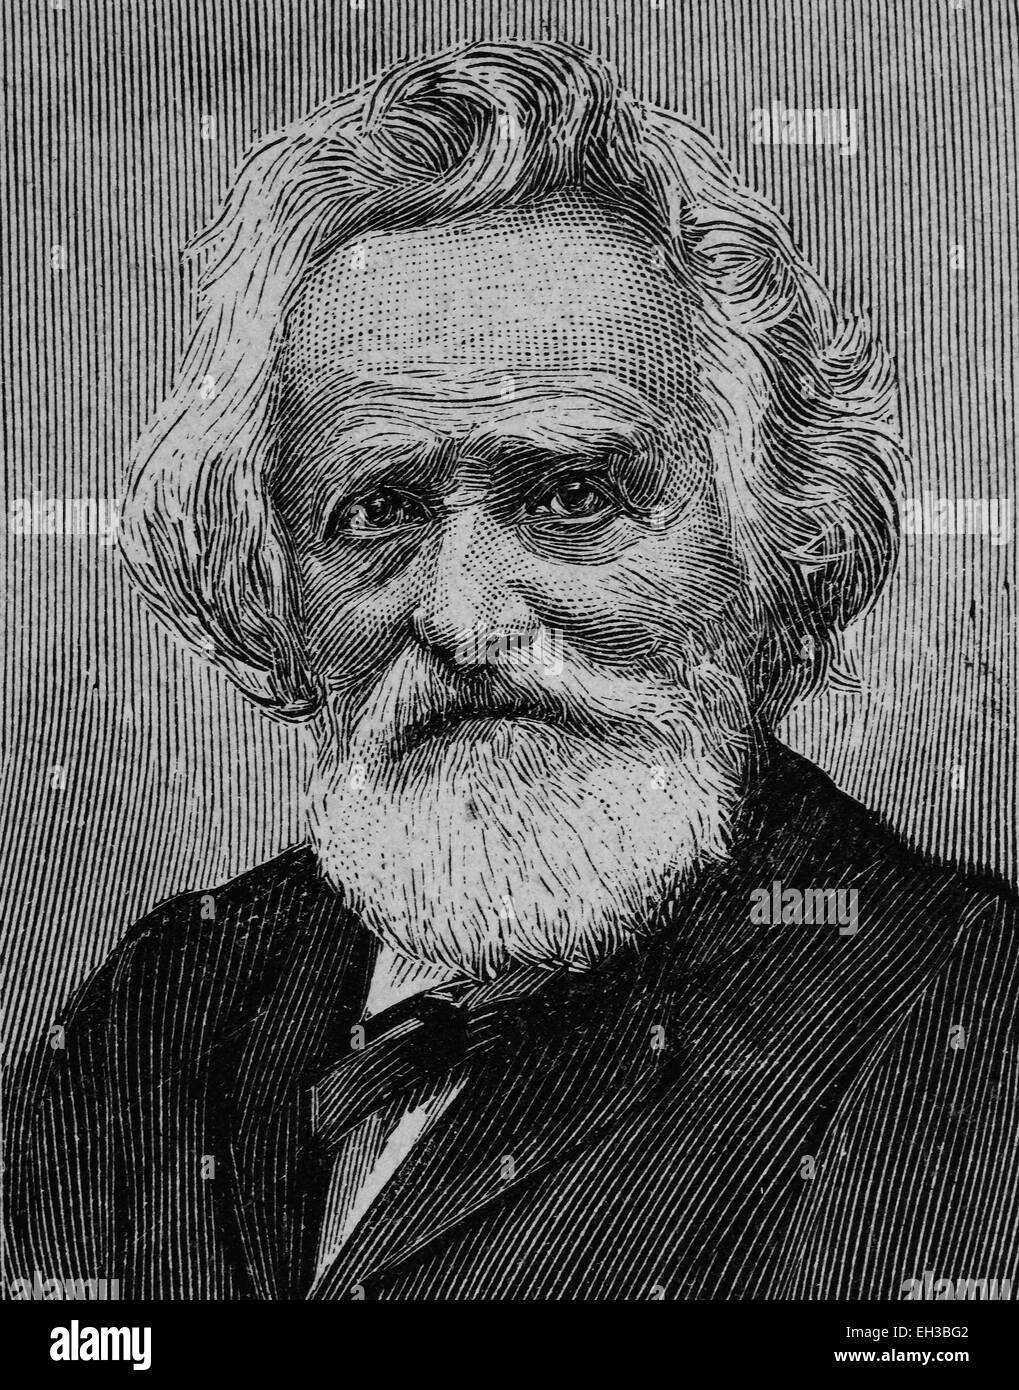 Johann Nepomuk Sepp, 1816 - 1909, un historien allemand, folkloriste, historien et politicien, gravure sur bois, vers 1880 Banque D'Images